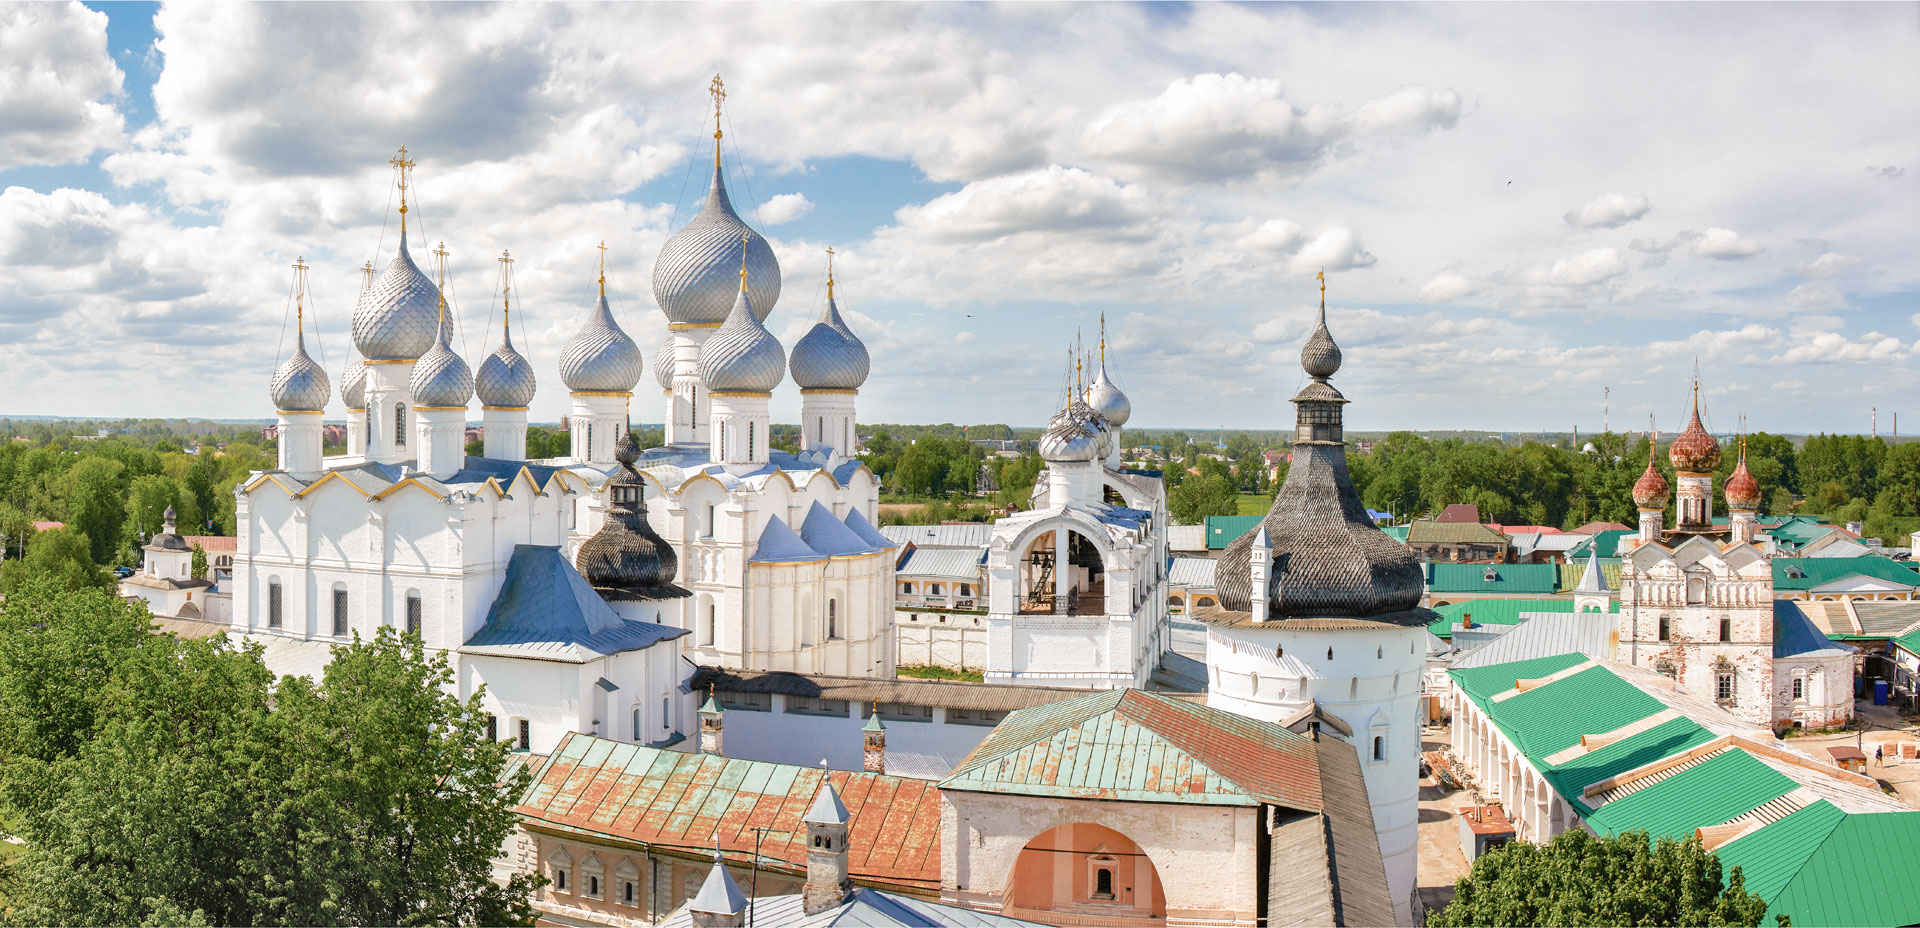 Вид на Ростовский кремль с Водяной башни. Церковь Воскресения Христова - крайняя слева.